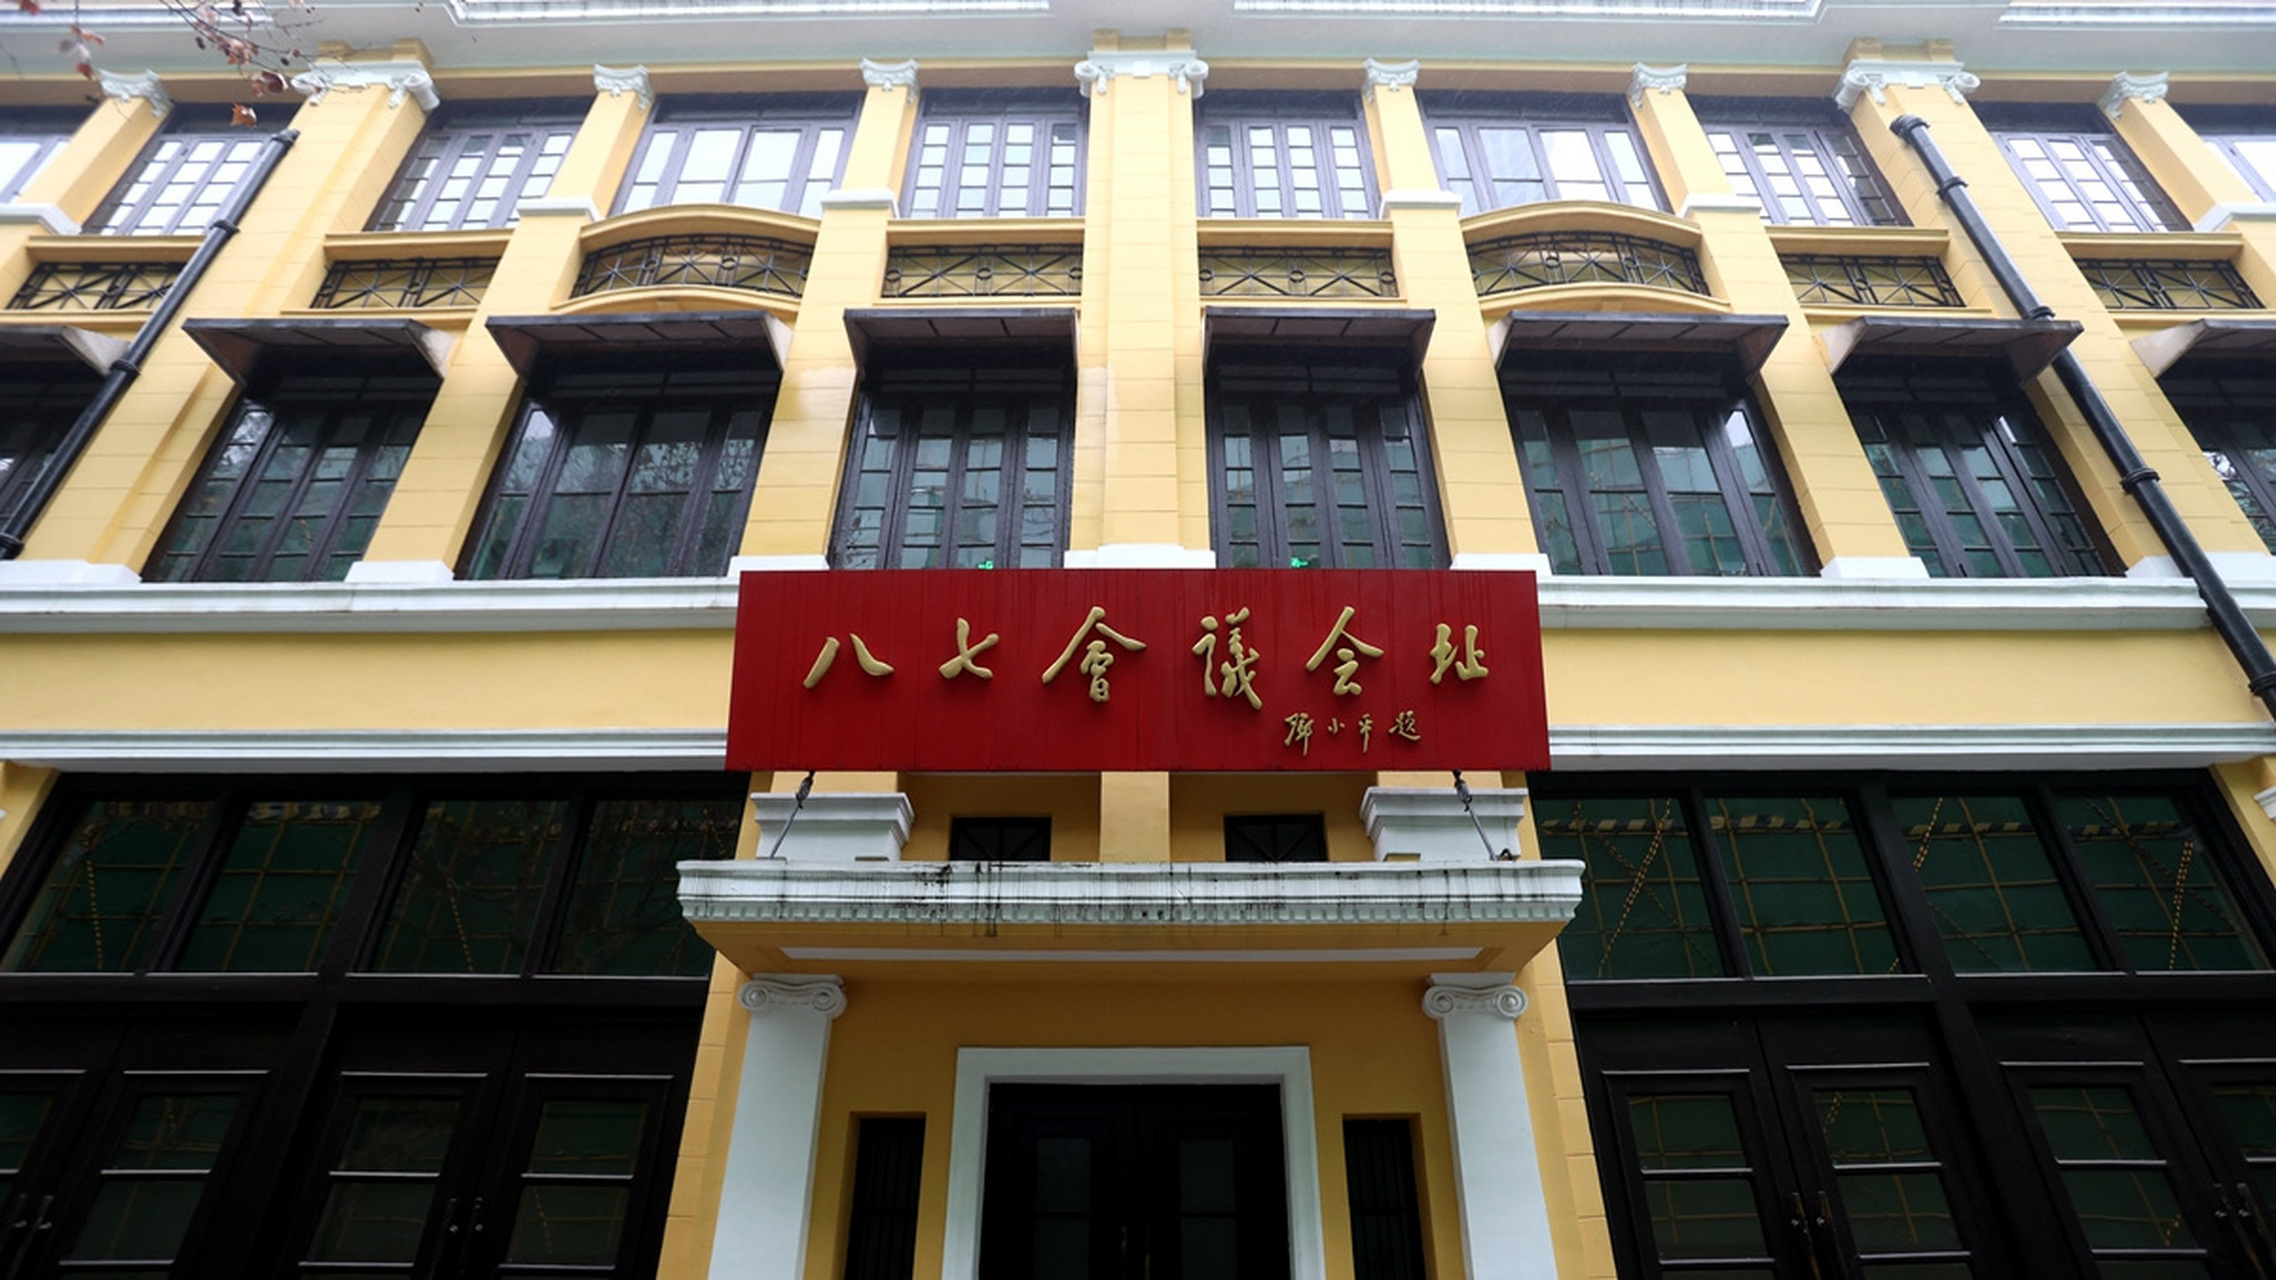 八七会议会址纪念馆位于武汉市汉口鄱阳街135—139号,依托旧址而建